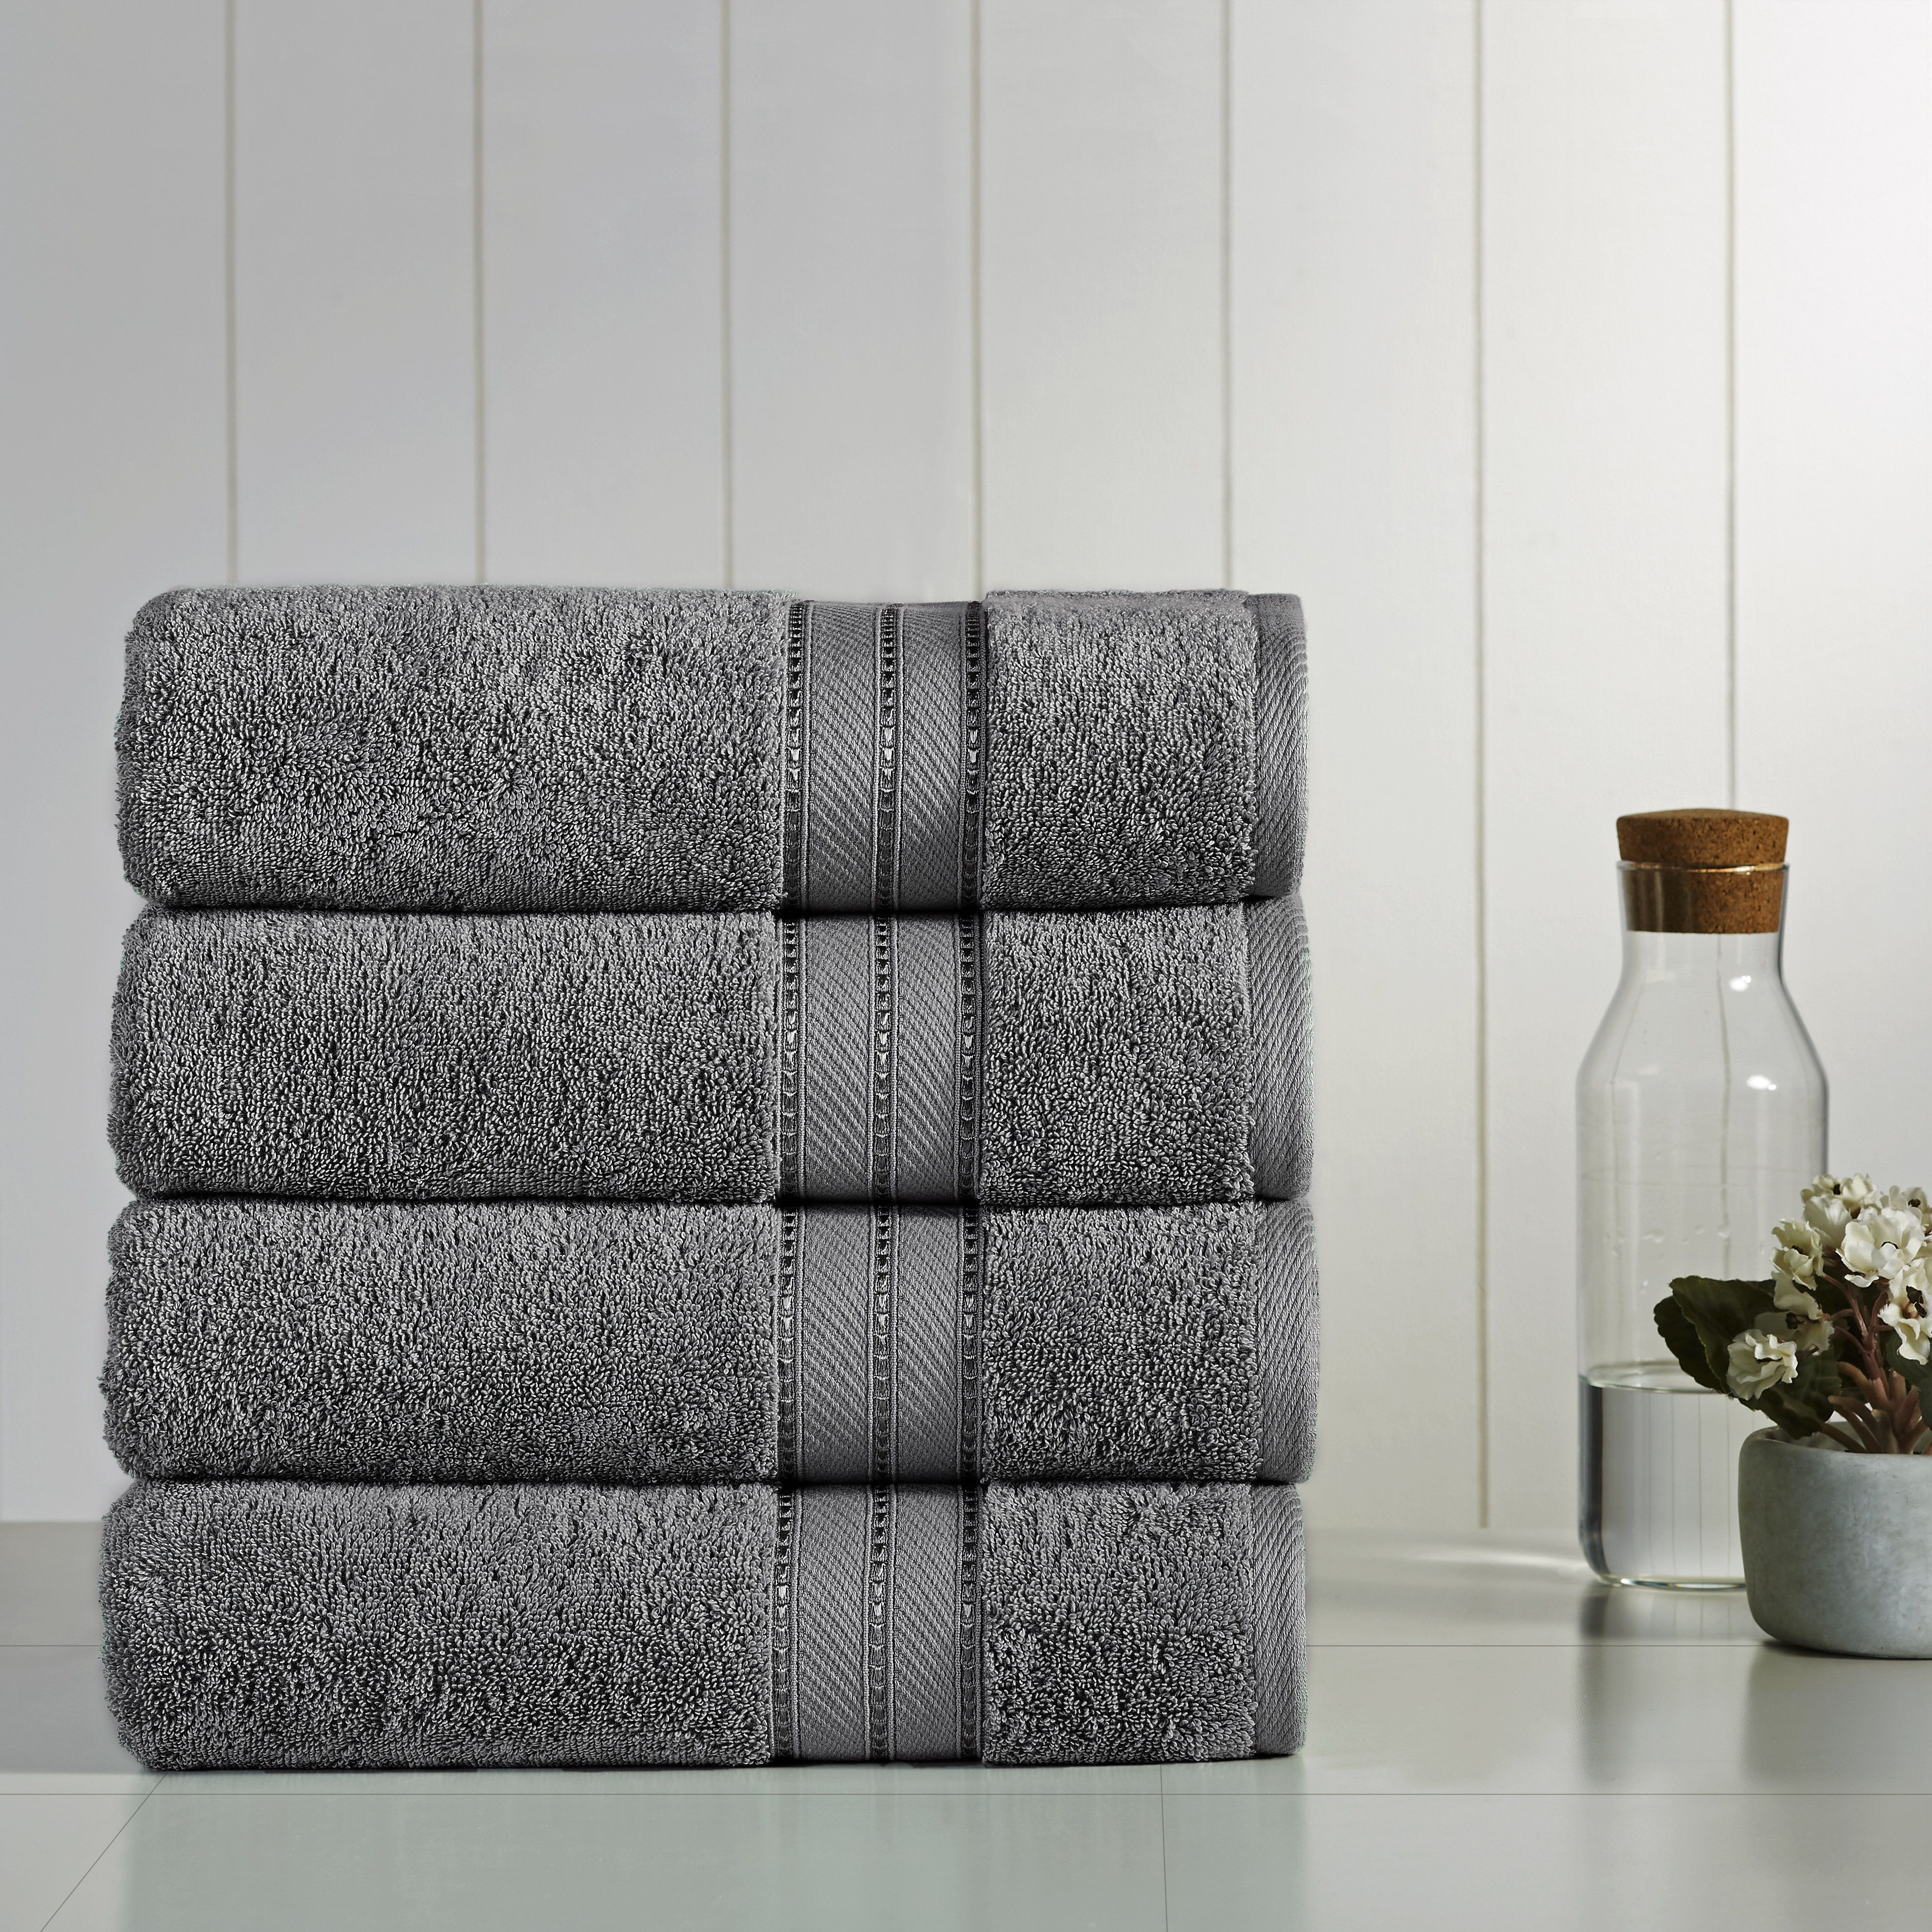 Lavish Touch 100% Cotton 700 GSM Zero Twist Towels - Lavish Touch